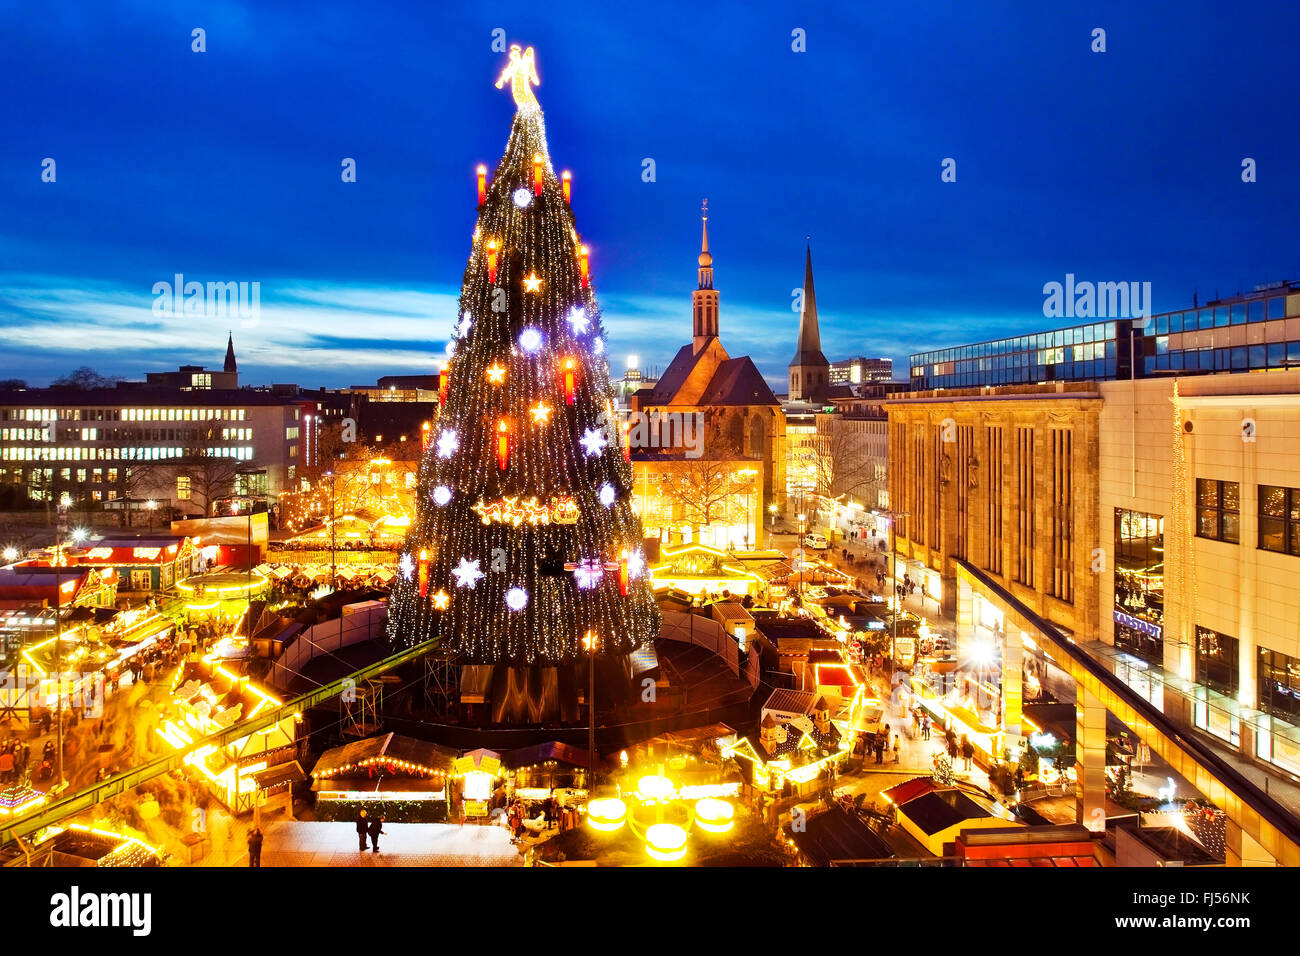 Weihnachtsmarkt mit gigantischen Weihnachtsbaum auf dem Hansaplatz, Deutschland, Nordrhein-Westfalen, Ruhrgebiet, Dortmund Stockfoto